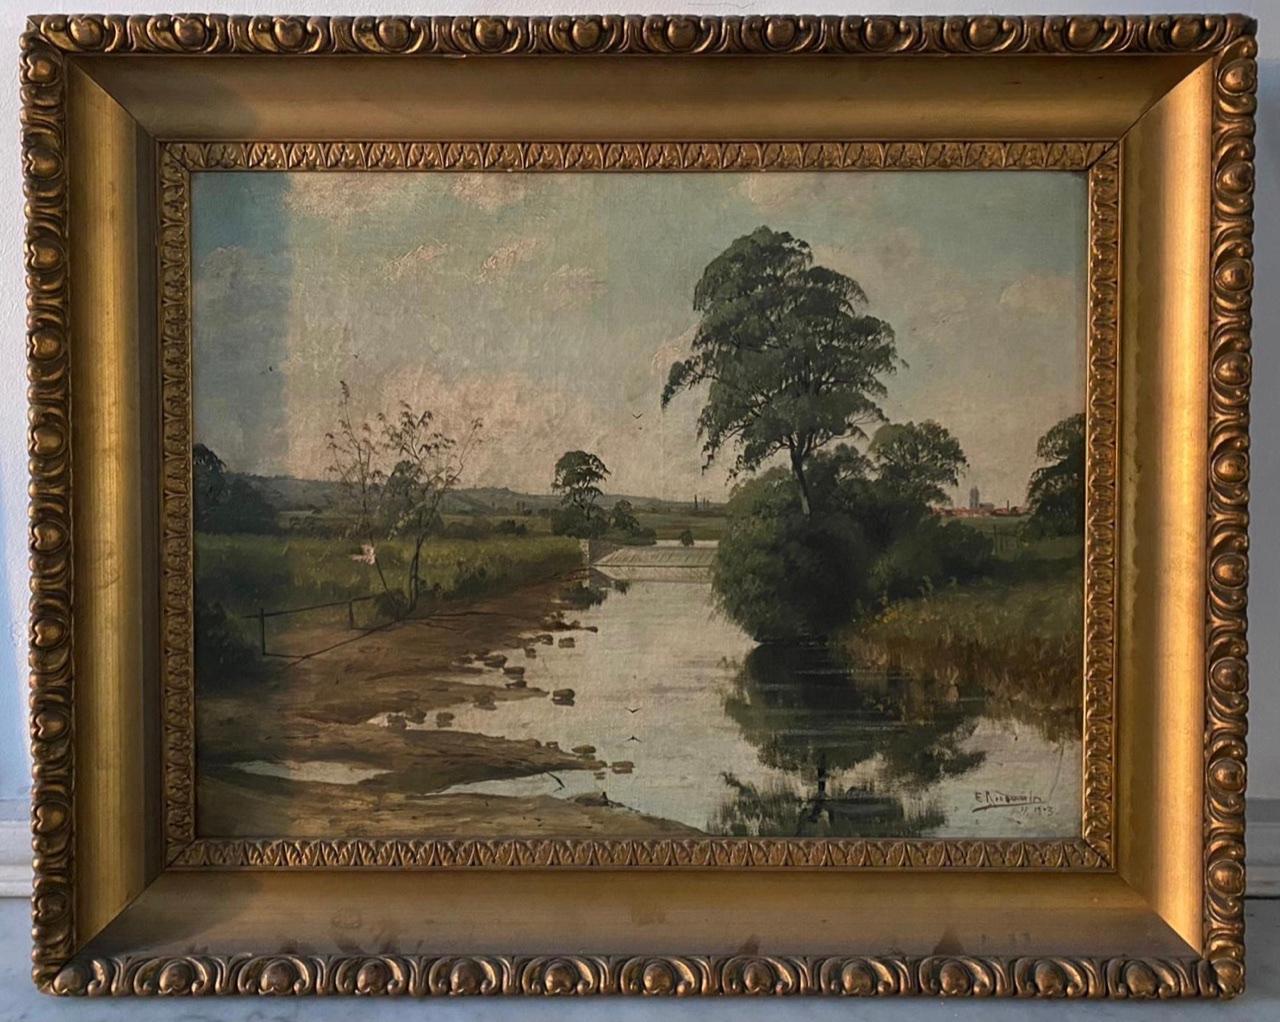 Charmante huile sur toile représentant un paysage de campagne traversé par un ruisseau, au bord duquel un arbre a poussé et s'y reflète. À l'arrière-plan, à droite de la toile, on aperçoit un village d'où dépasse un clocher d'église. 
Signé